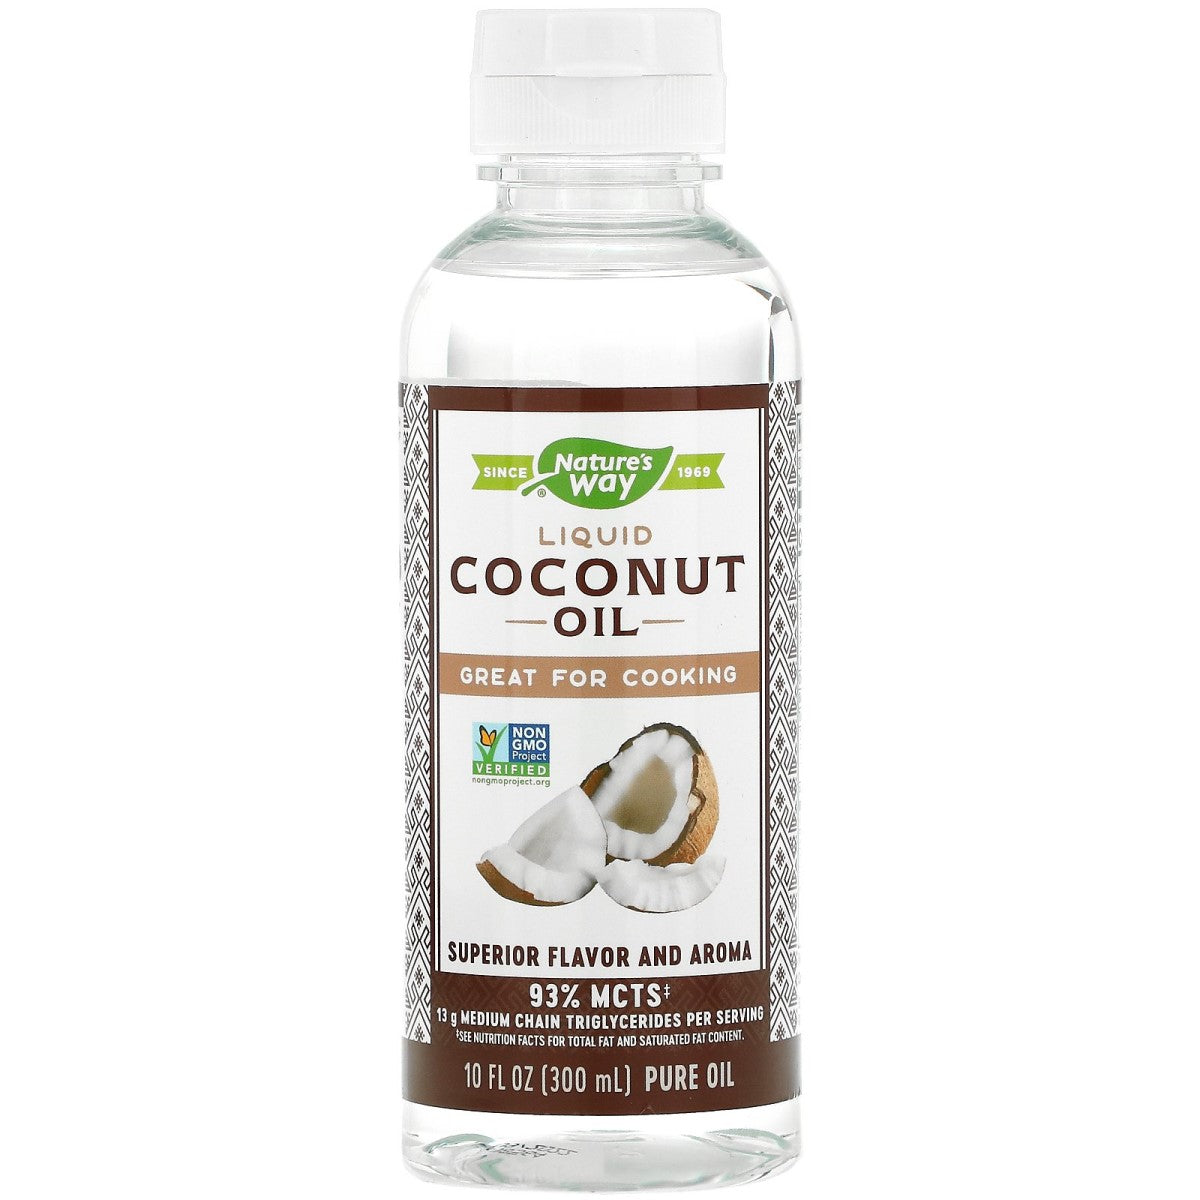 Primary image of Liquid Coconut Premium Oil